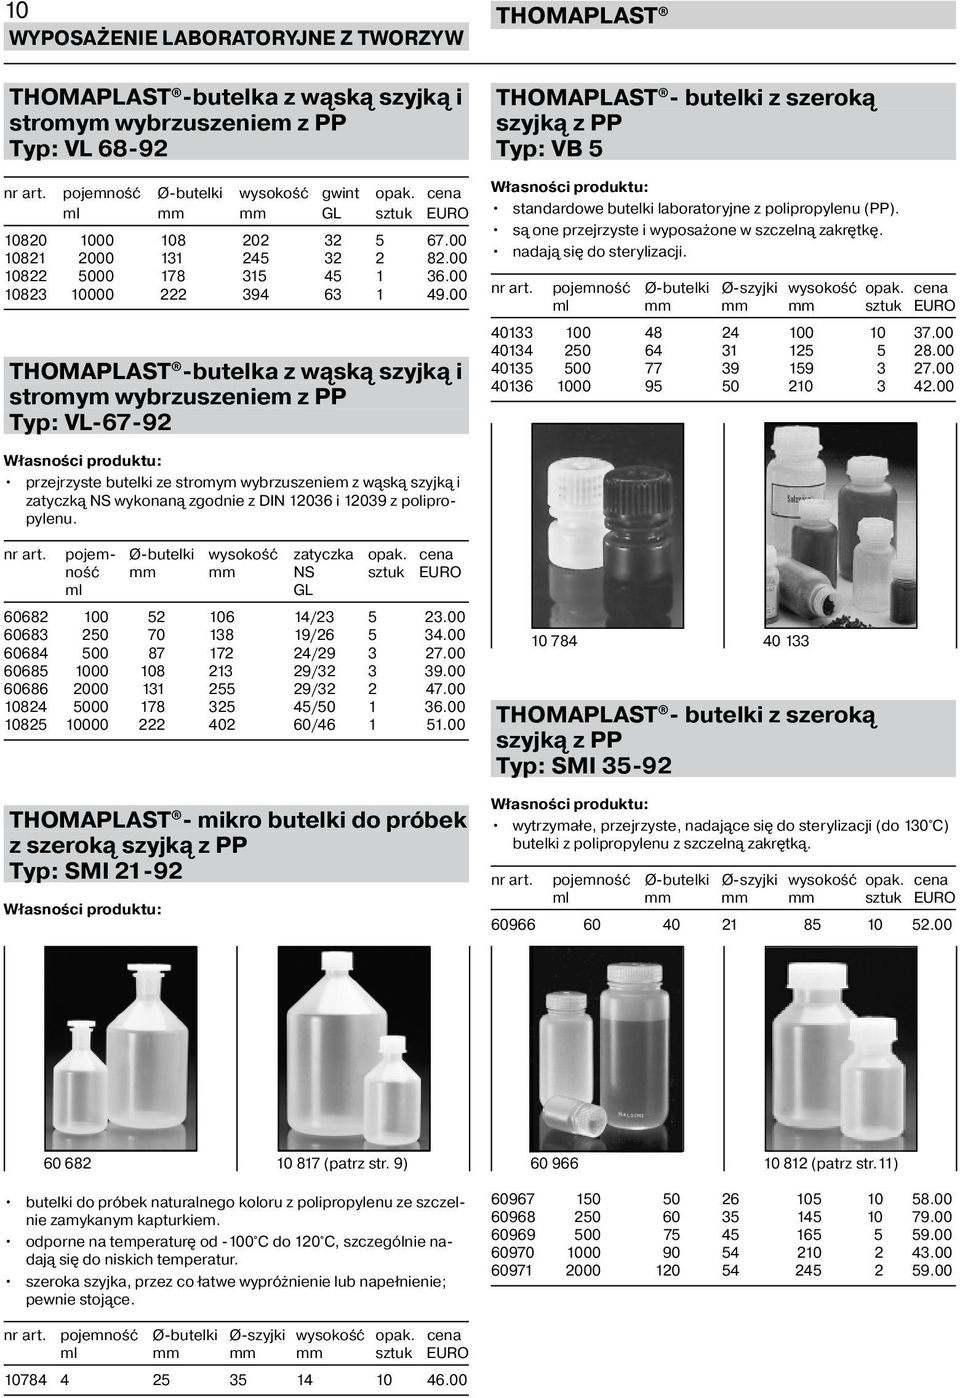 00 -butelka z wąską szyjką i stromym wybrzuszeniem z PP Typ: VL-67-92 - butelki z szeroką szyjką z PP Typ: VB 5 standardowe butelki laboratoryjne z polipropylenu (PP).